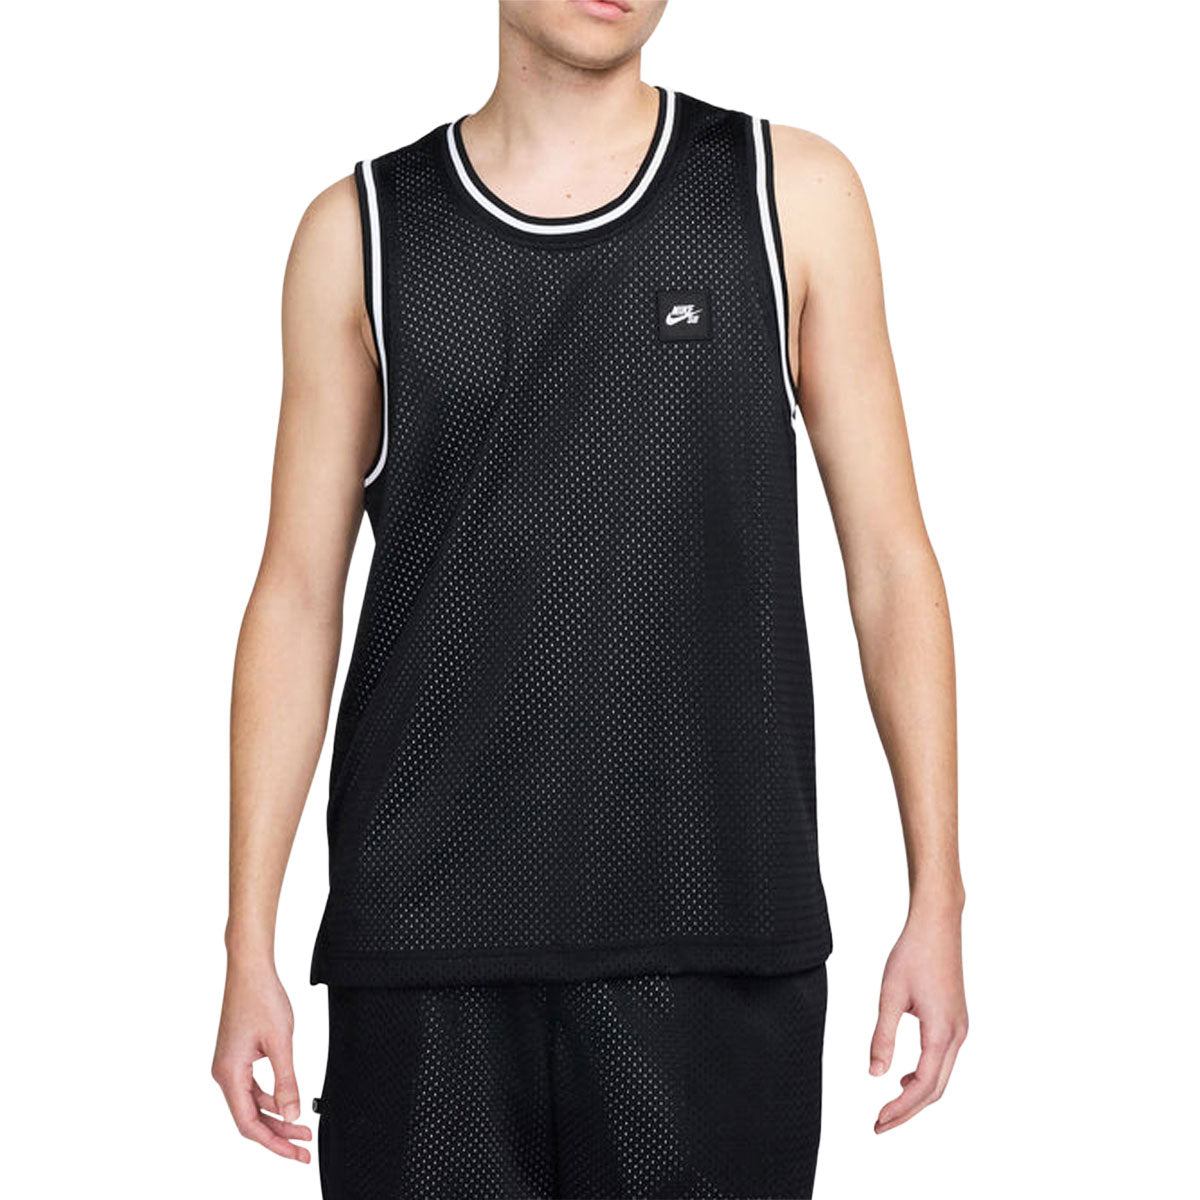 Nike SB Basketball Skate Jersey - Black/White image 1